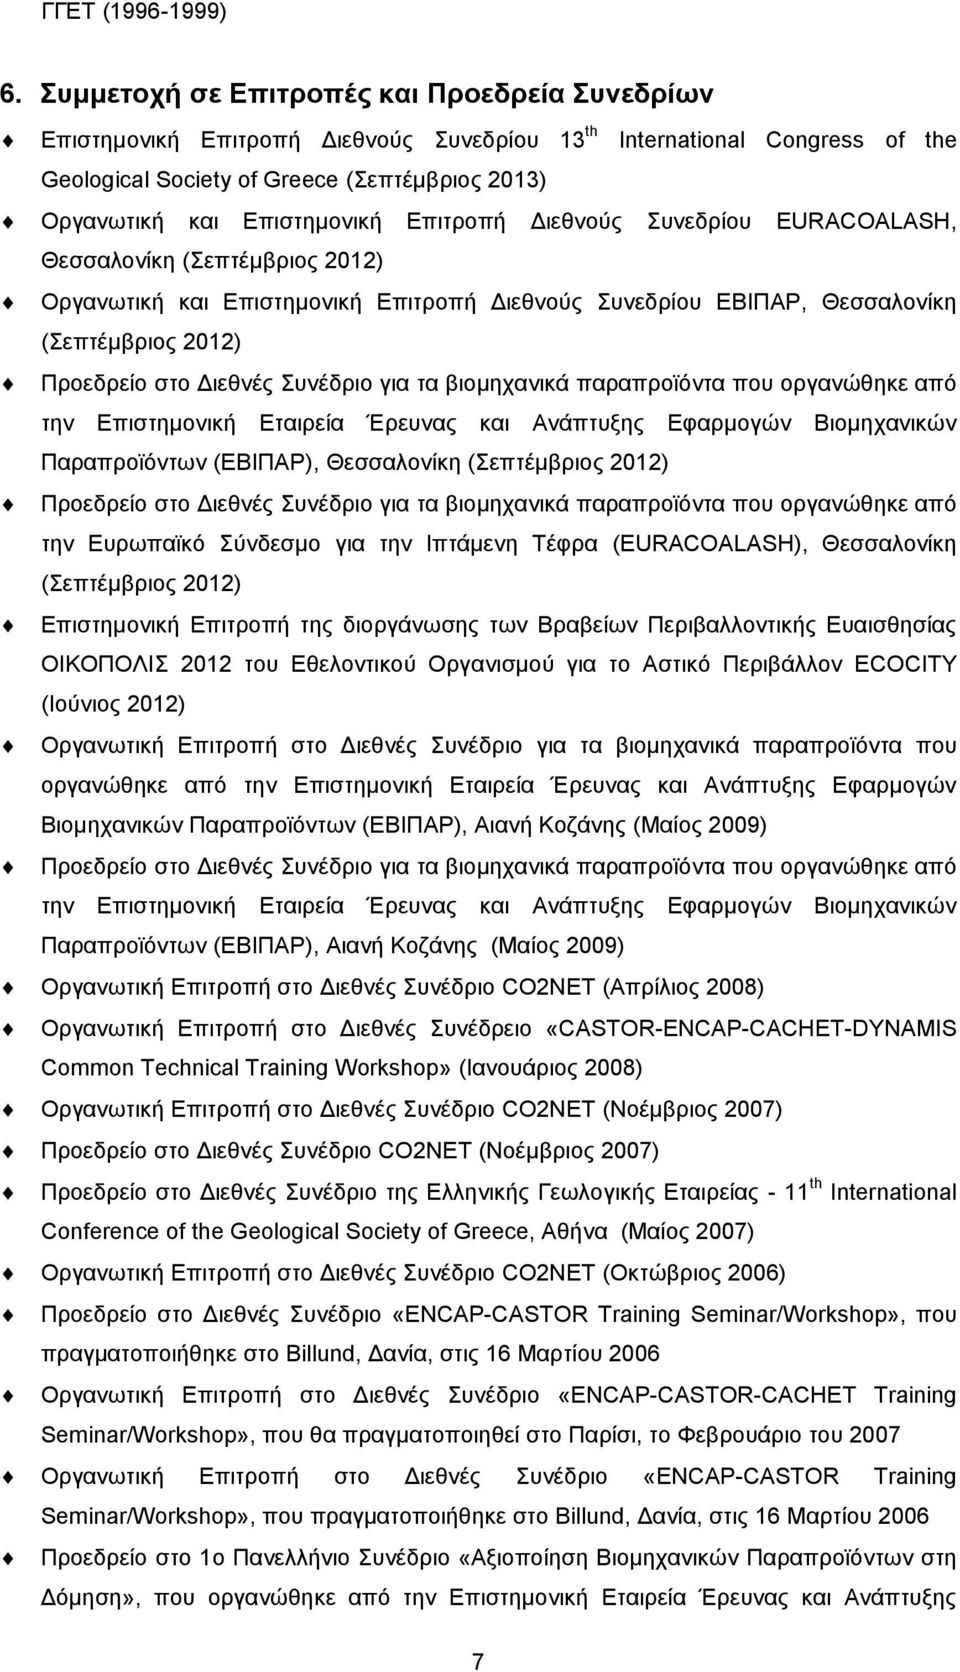 Επιτροπή Διεθνούς Συνεδρίου EURACOALASH, Θεσσαλονίκη (Σεπτέμβριος 2012) Οργανωτική και Επιστημονική Επιτροπή Διεθνούς Συνεδρίου ΕΒΙΠΑΡ, Θεσσαλονίκη (Σεπτέμβριος 2012) Προεδρείο στο Διεθνές Συνέδριο